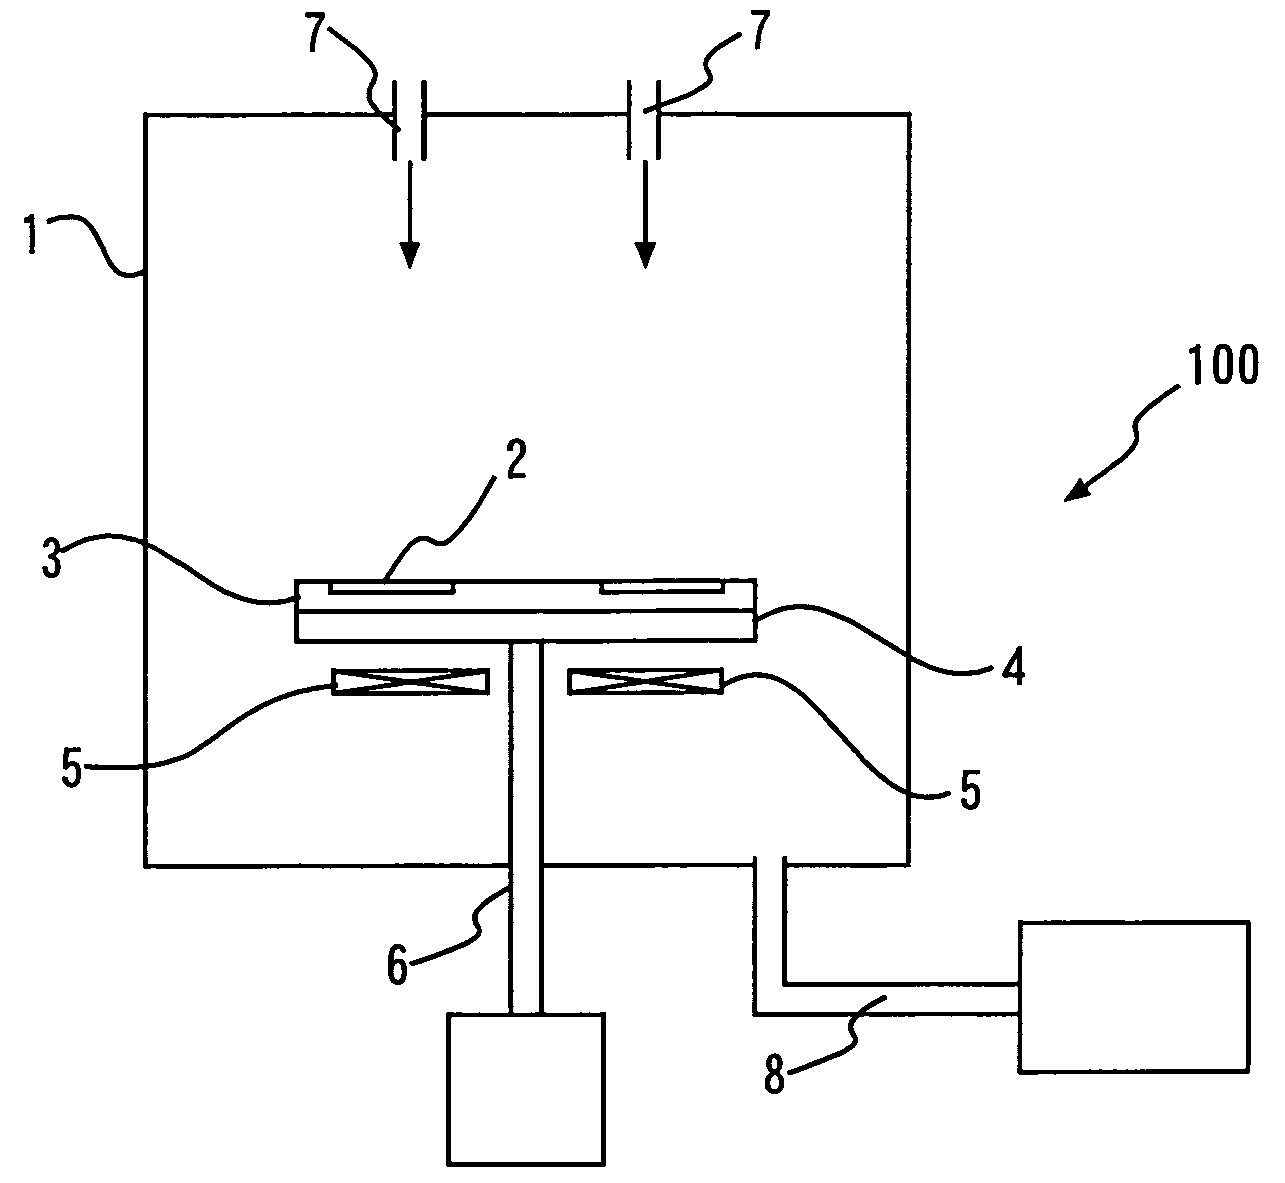 Vapor-phase epitaxial apparatus and vapor phase epitaxial method